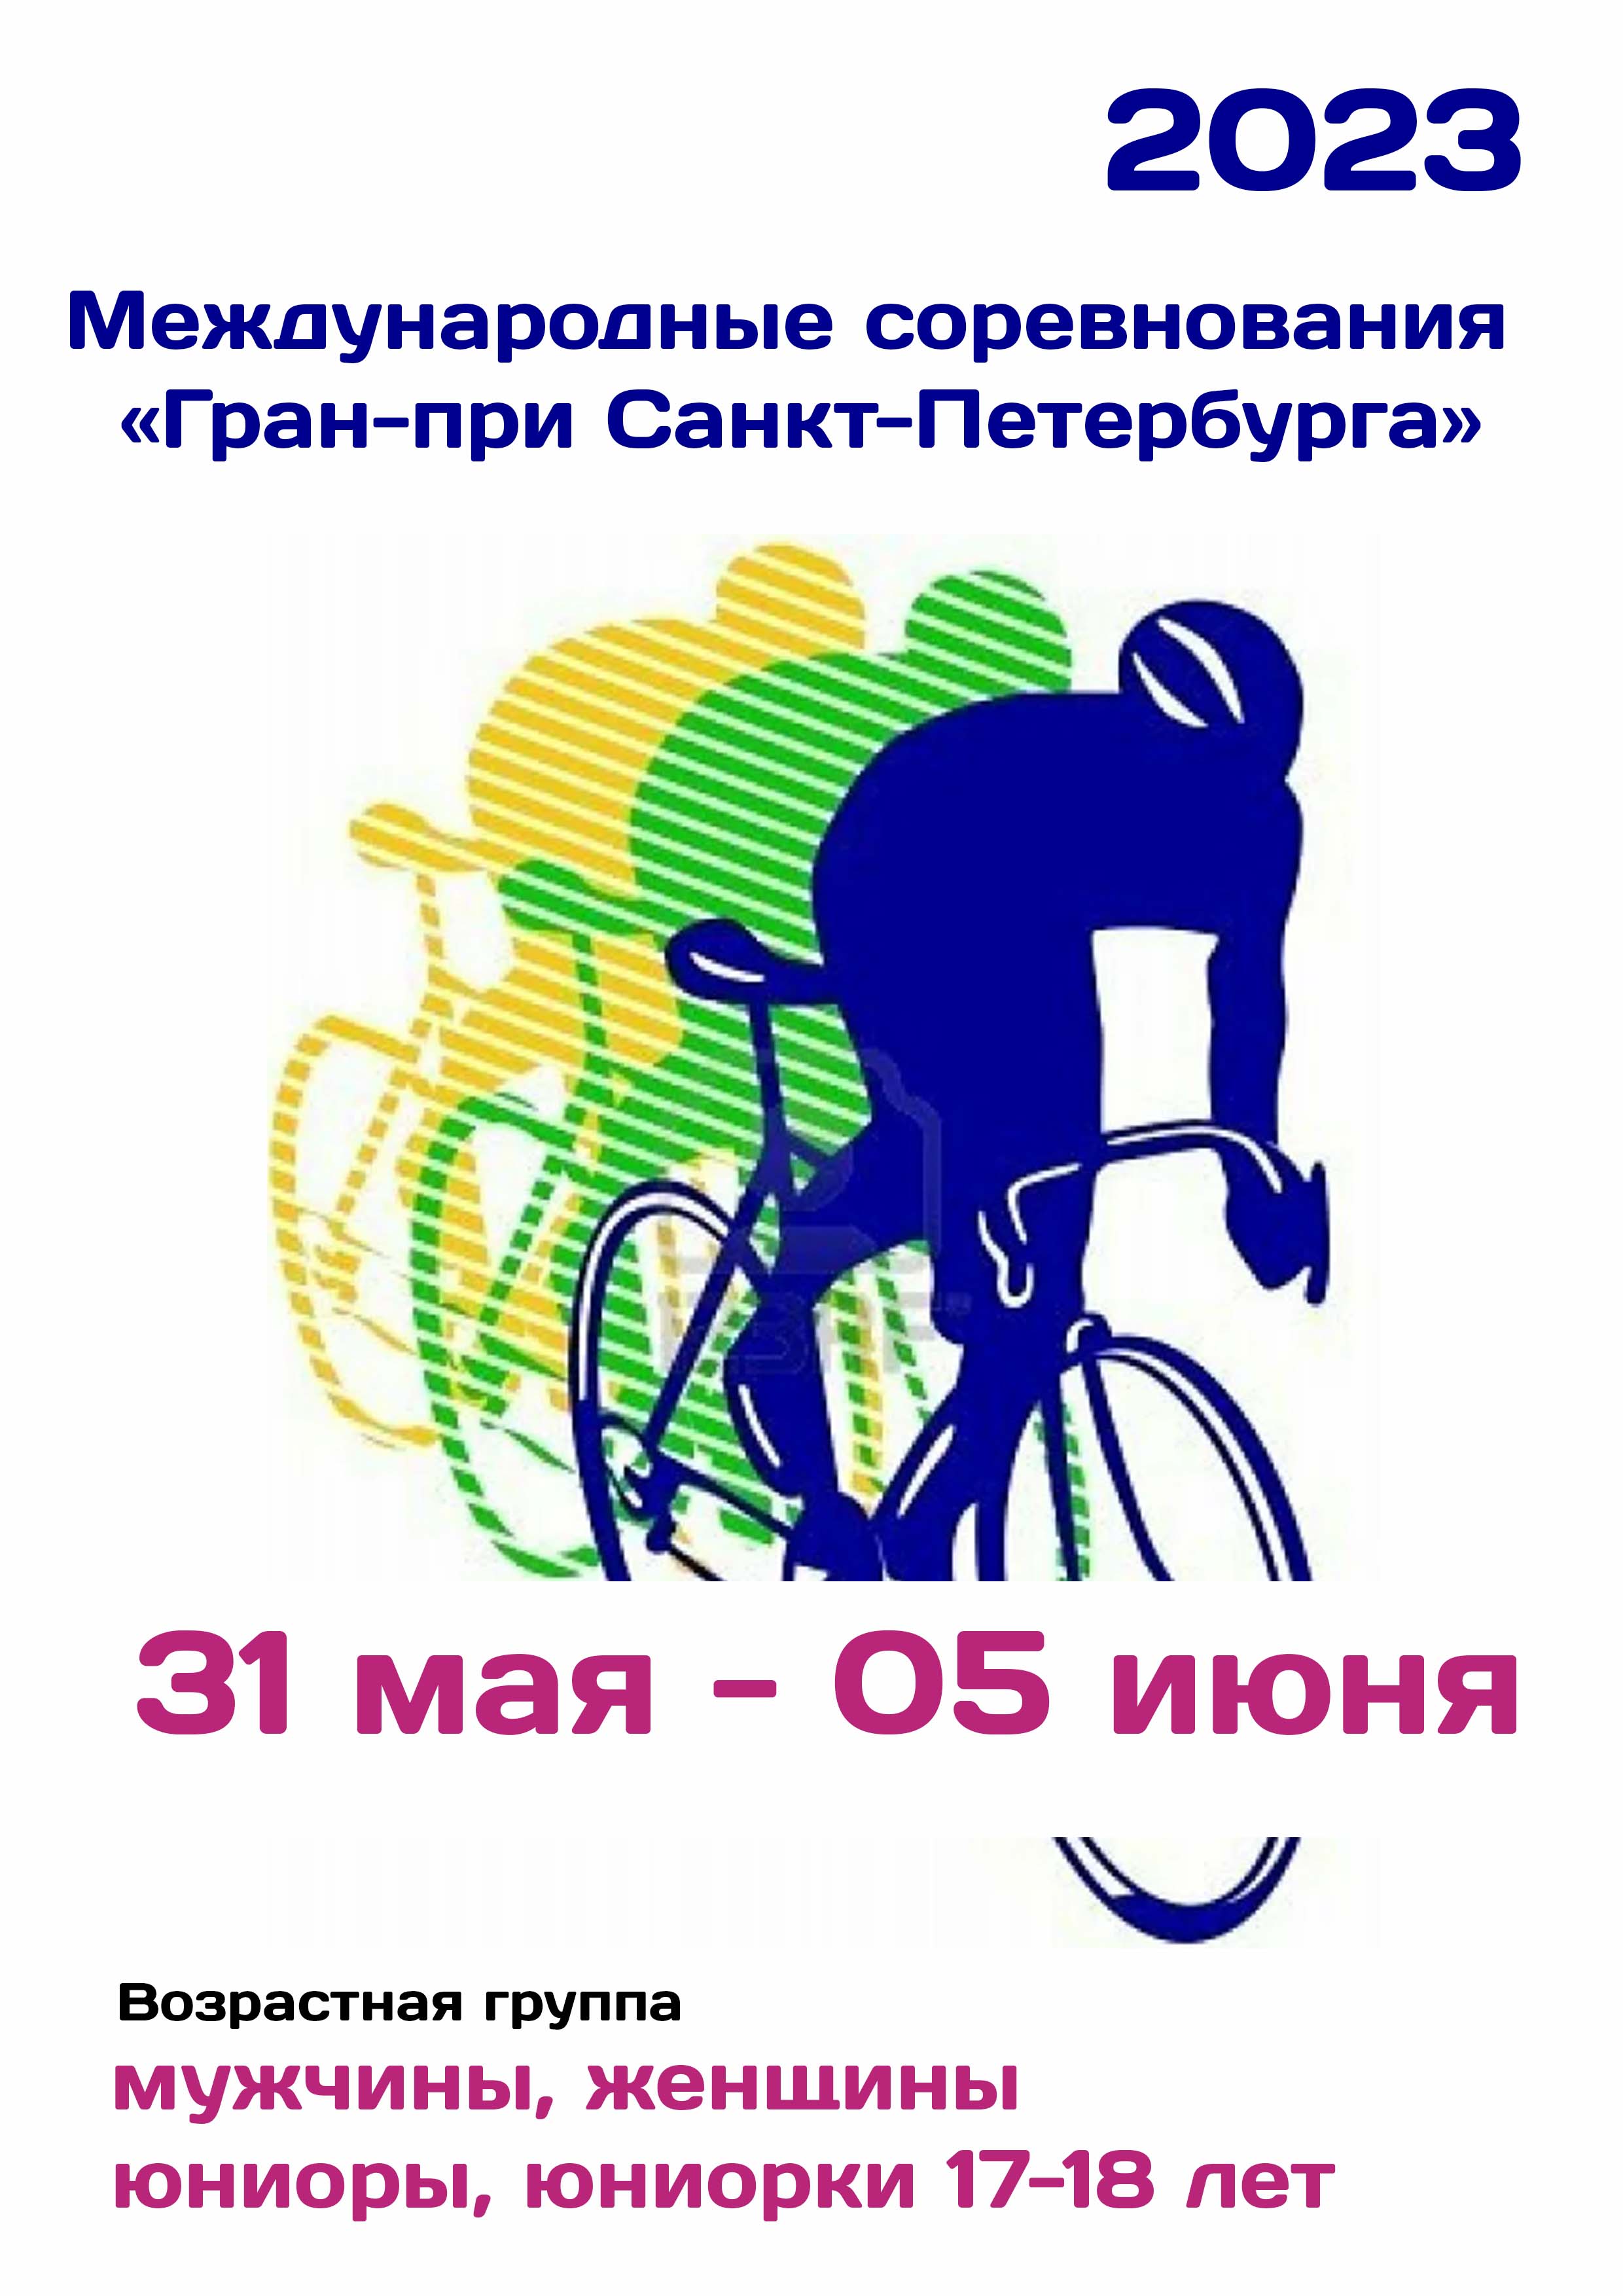 Международные соревнования «Гран-при Санкт-Петербурга»  по велоспорту 31  maggio
 2023  anno
 